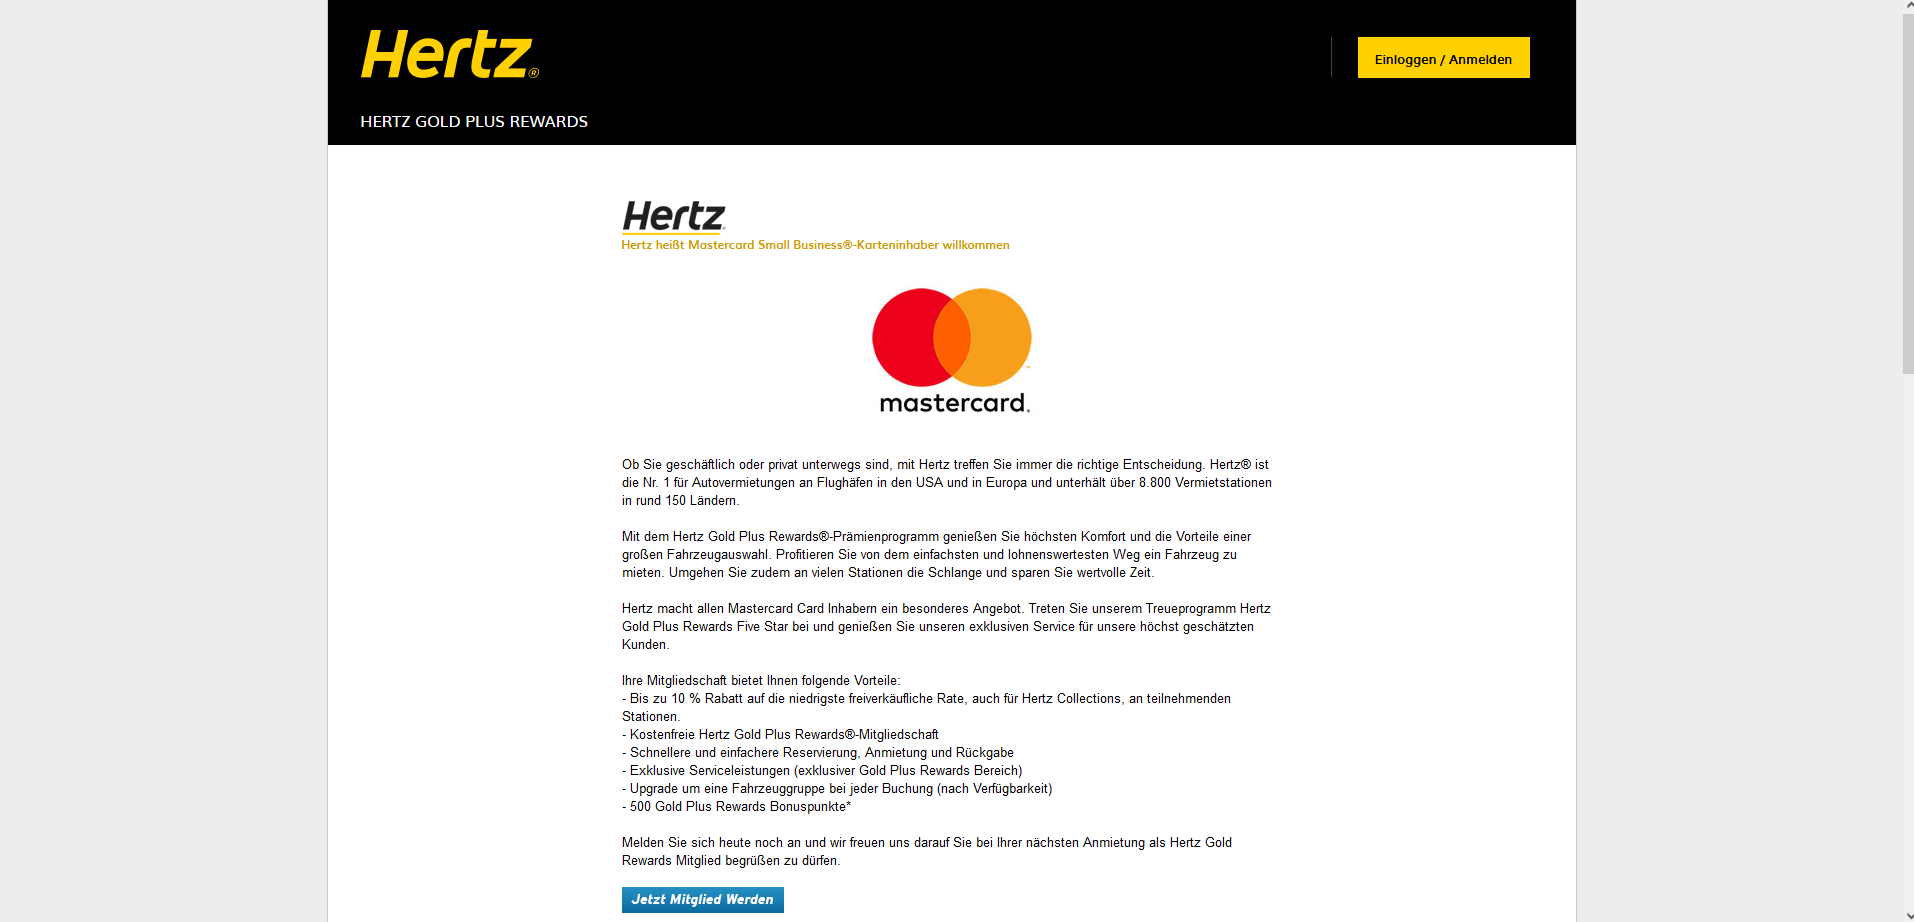 Beispiel für Composite Co-Branding: Hertz und MasterCard